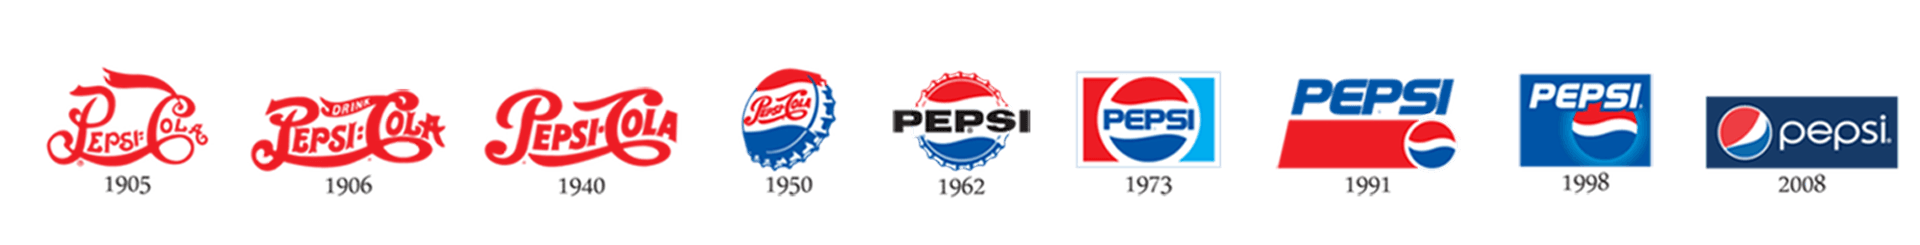 Pepsi Bottling Group Logo - Admiral | Beverage